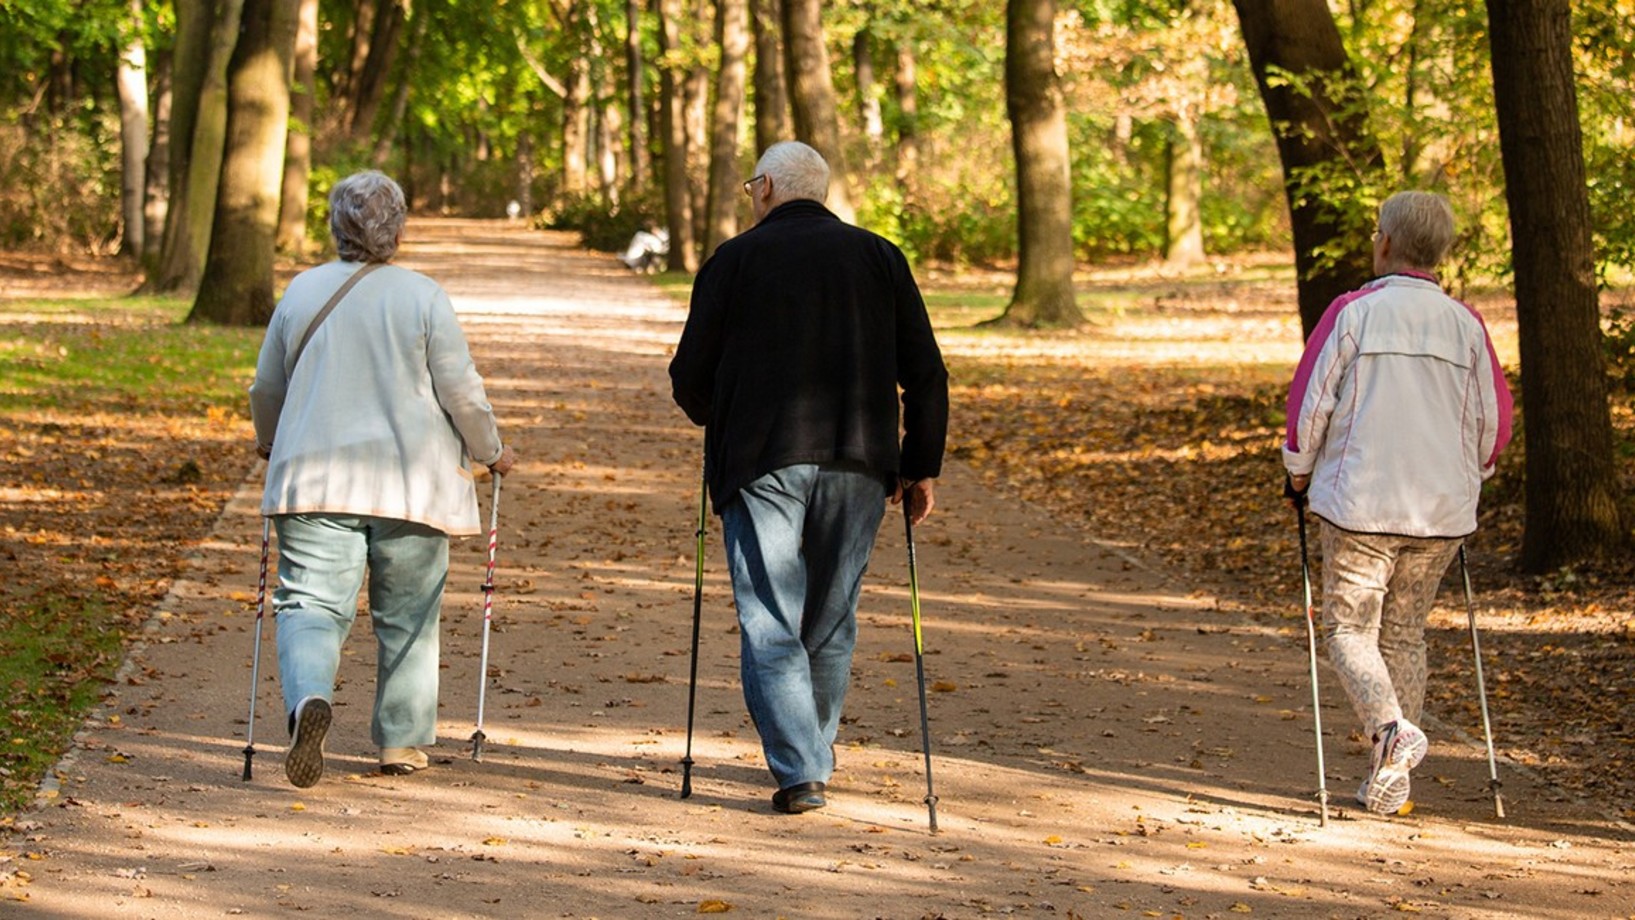 Ältere Personen am spazieren